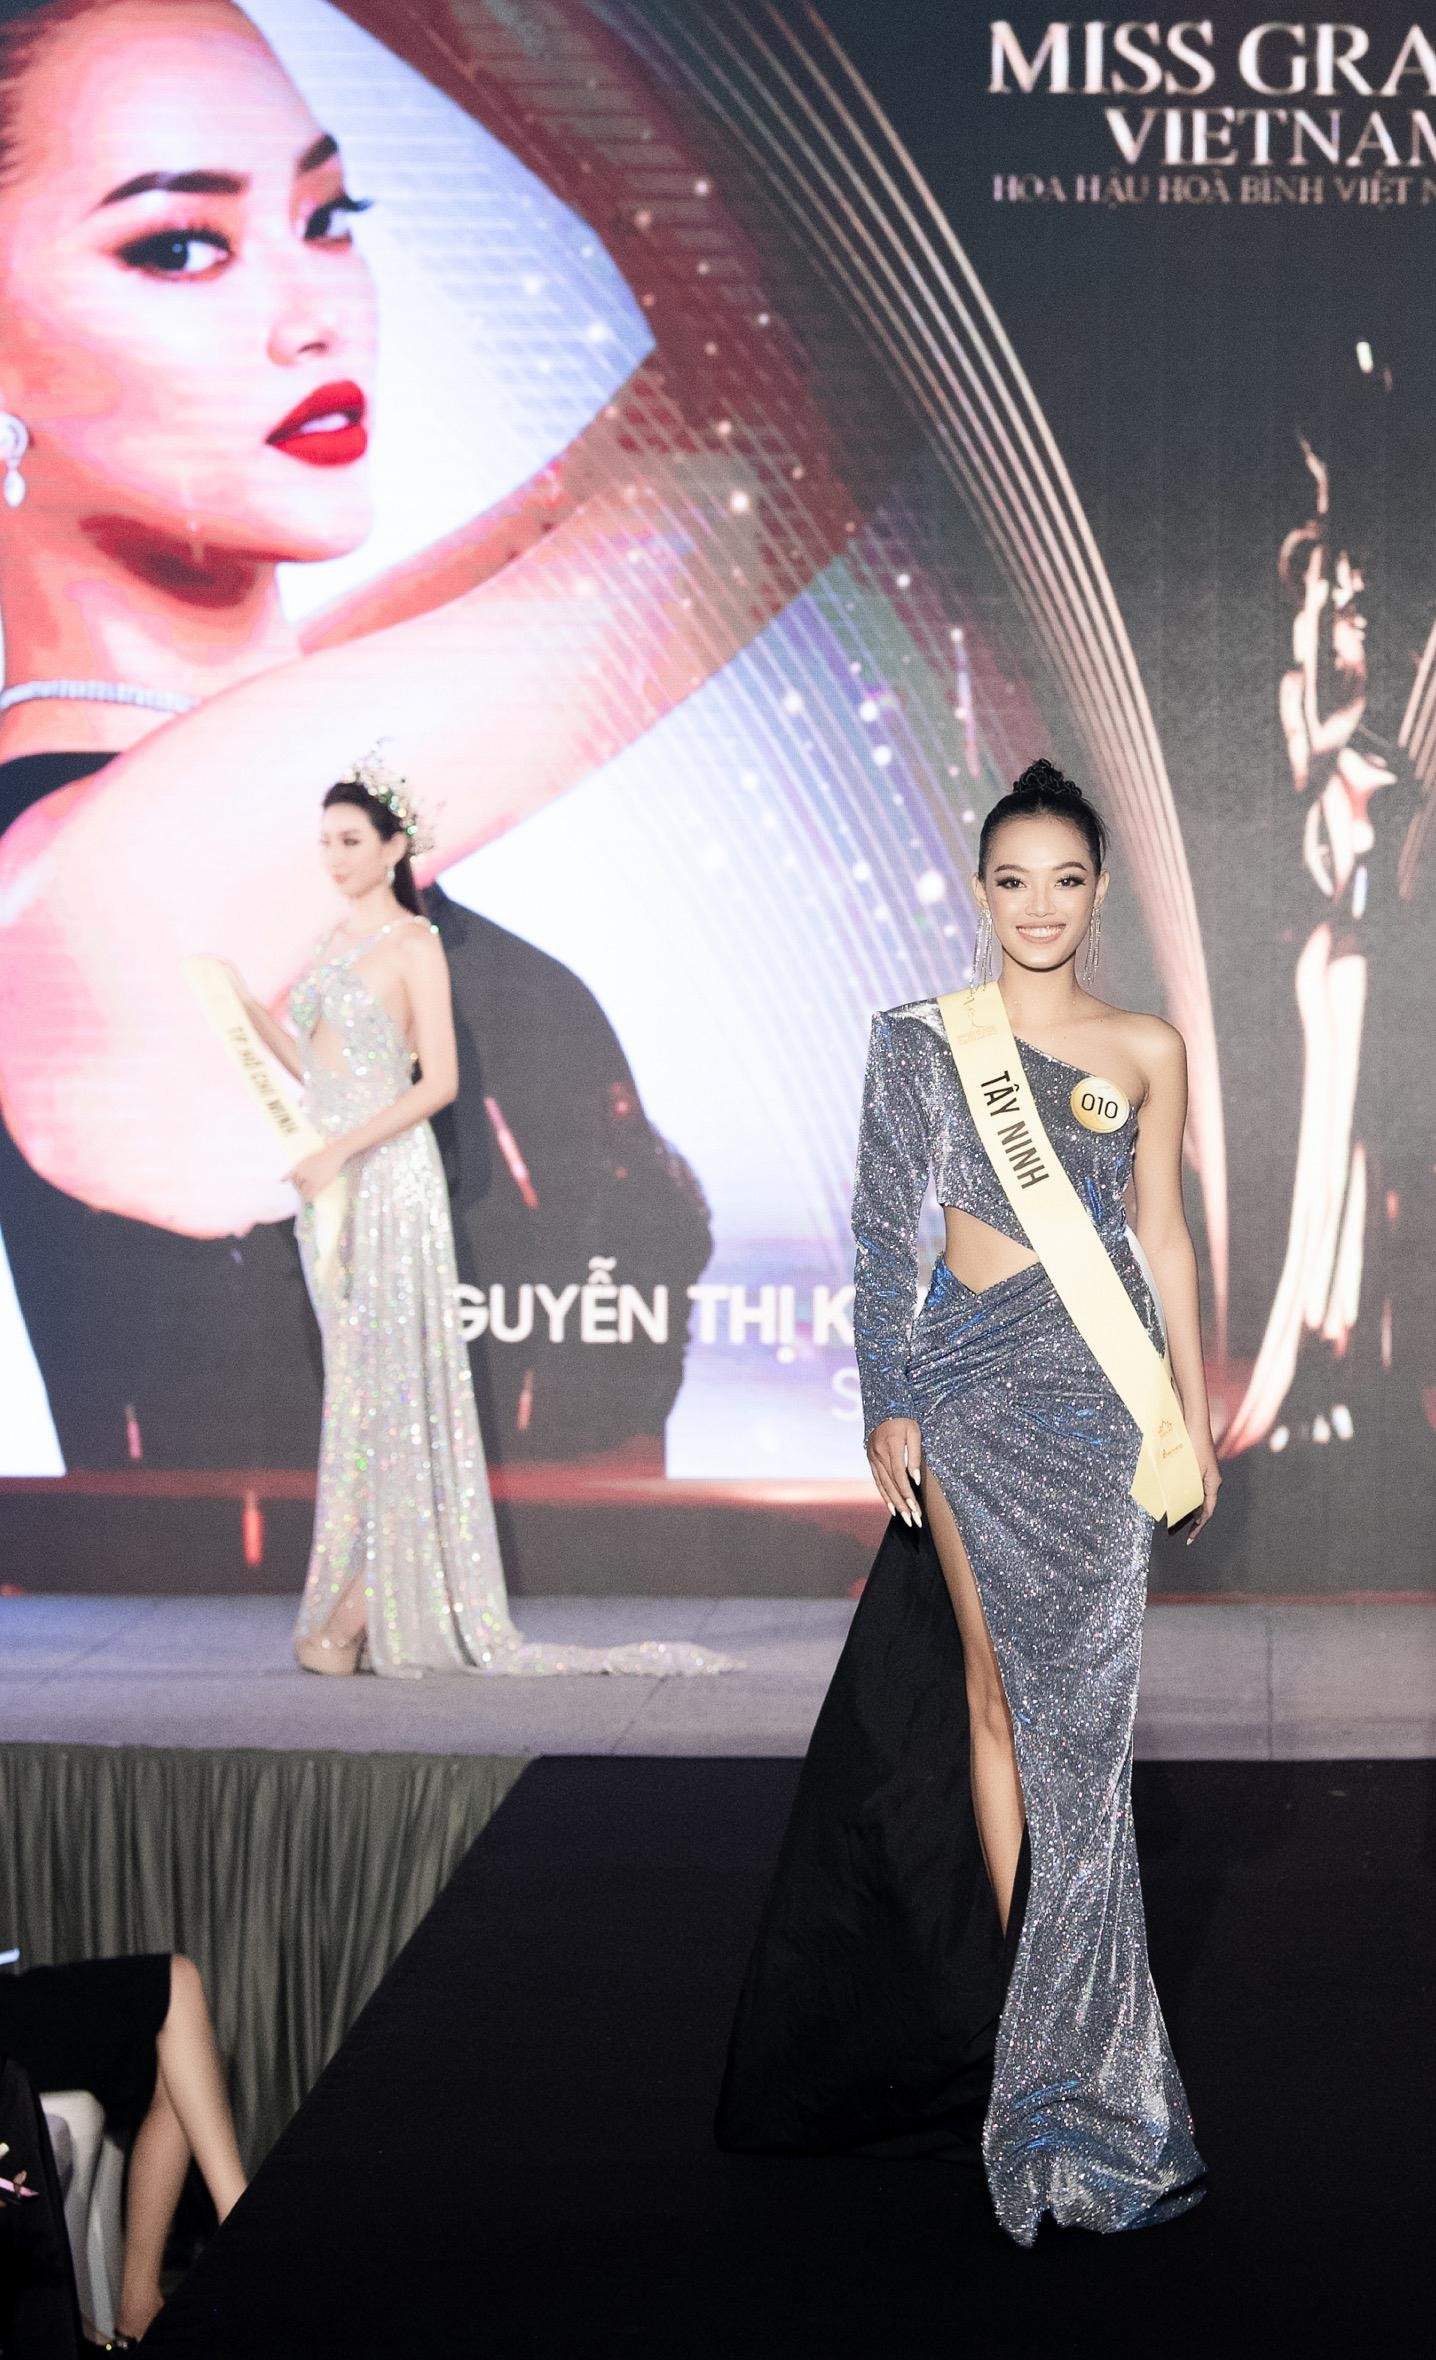 Mai Ngô, Quỳnh Châu tung chiêu catwalk độc đáo tại lễ nhận sash của Miss Grand Vietnam 2022-11